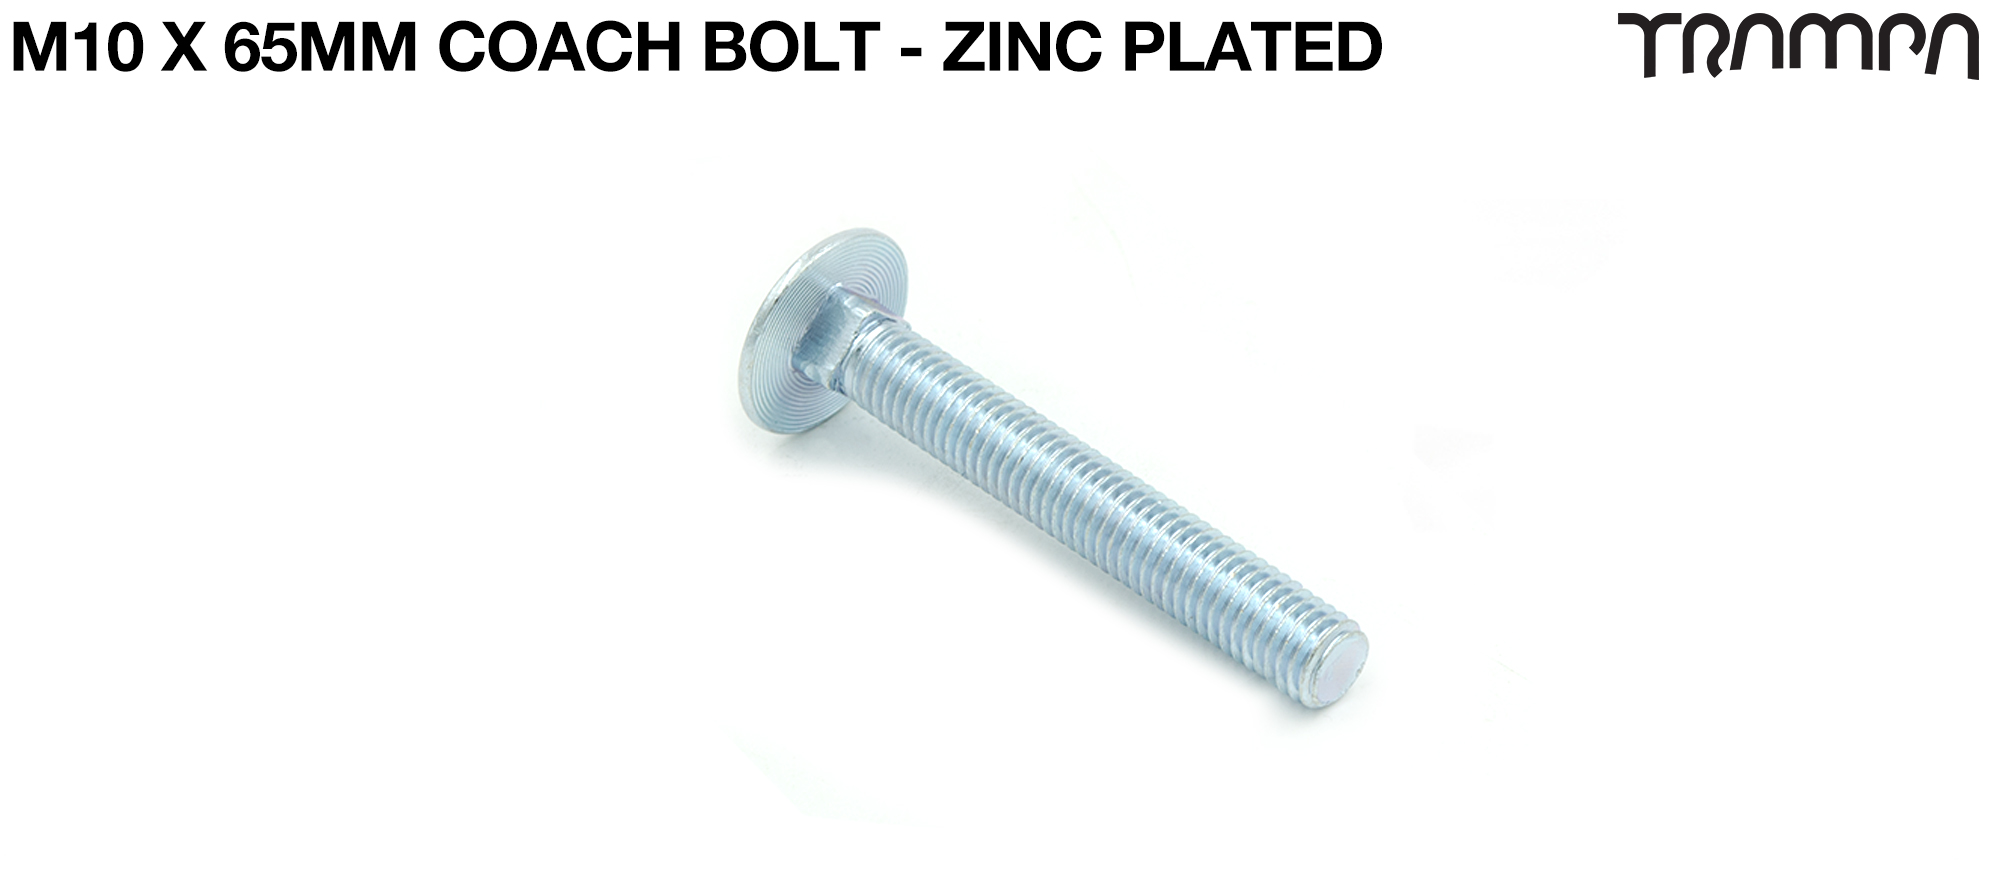 M10 x 65mm Coach Bolt Zinc plated